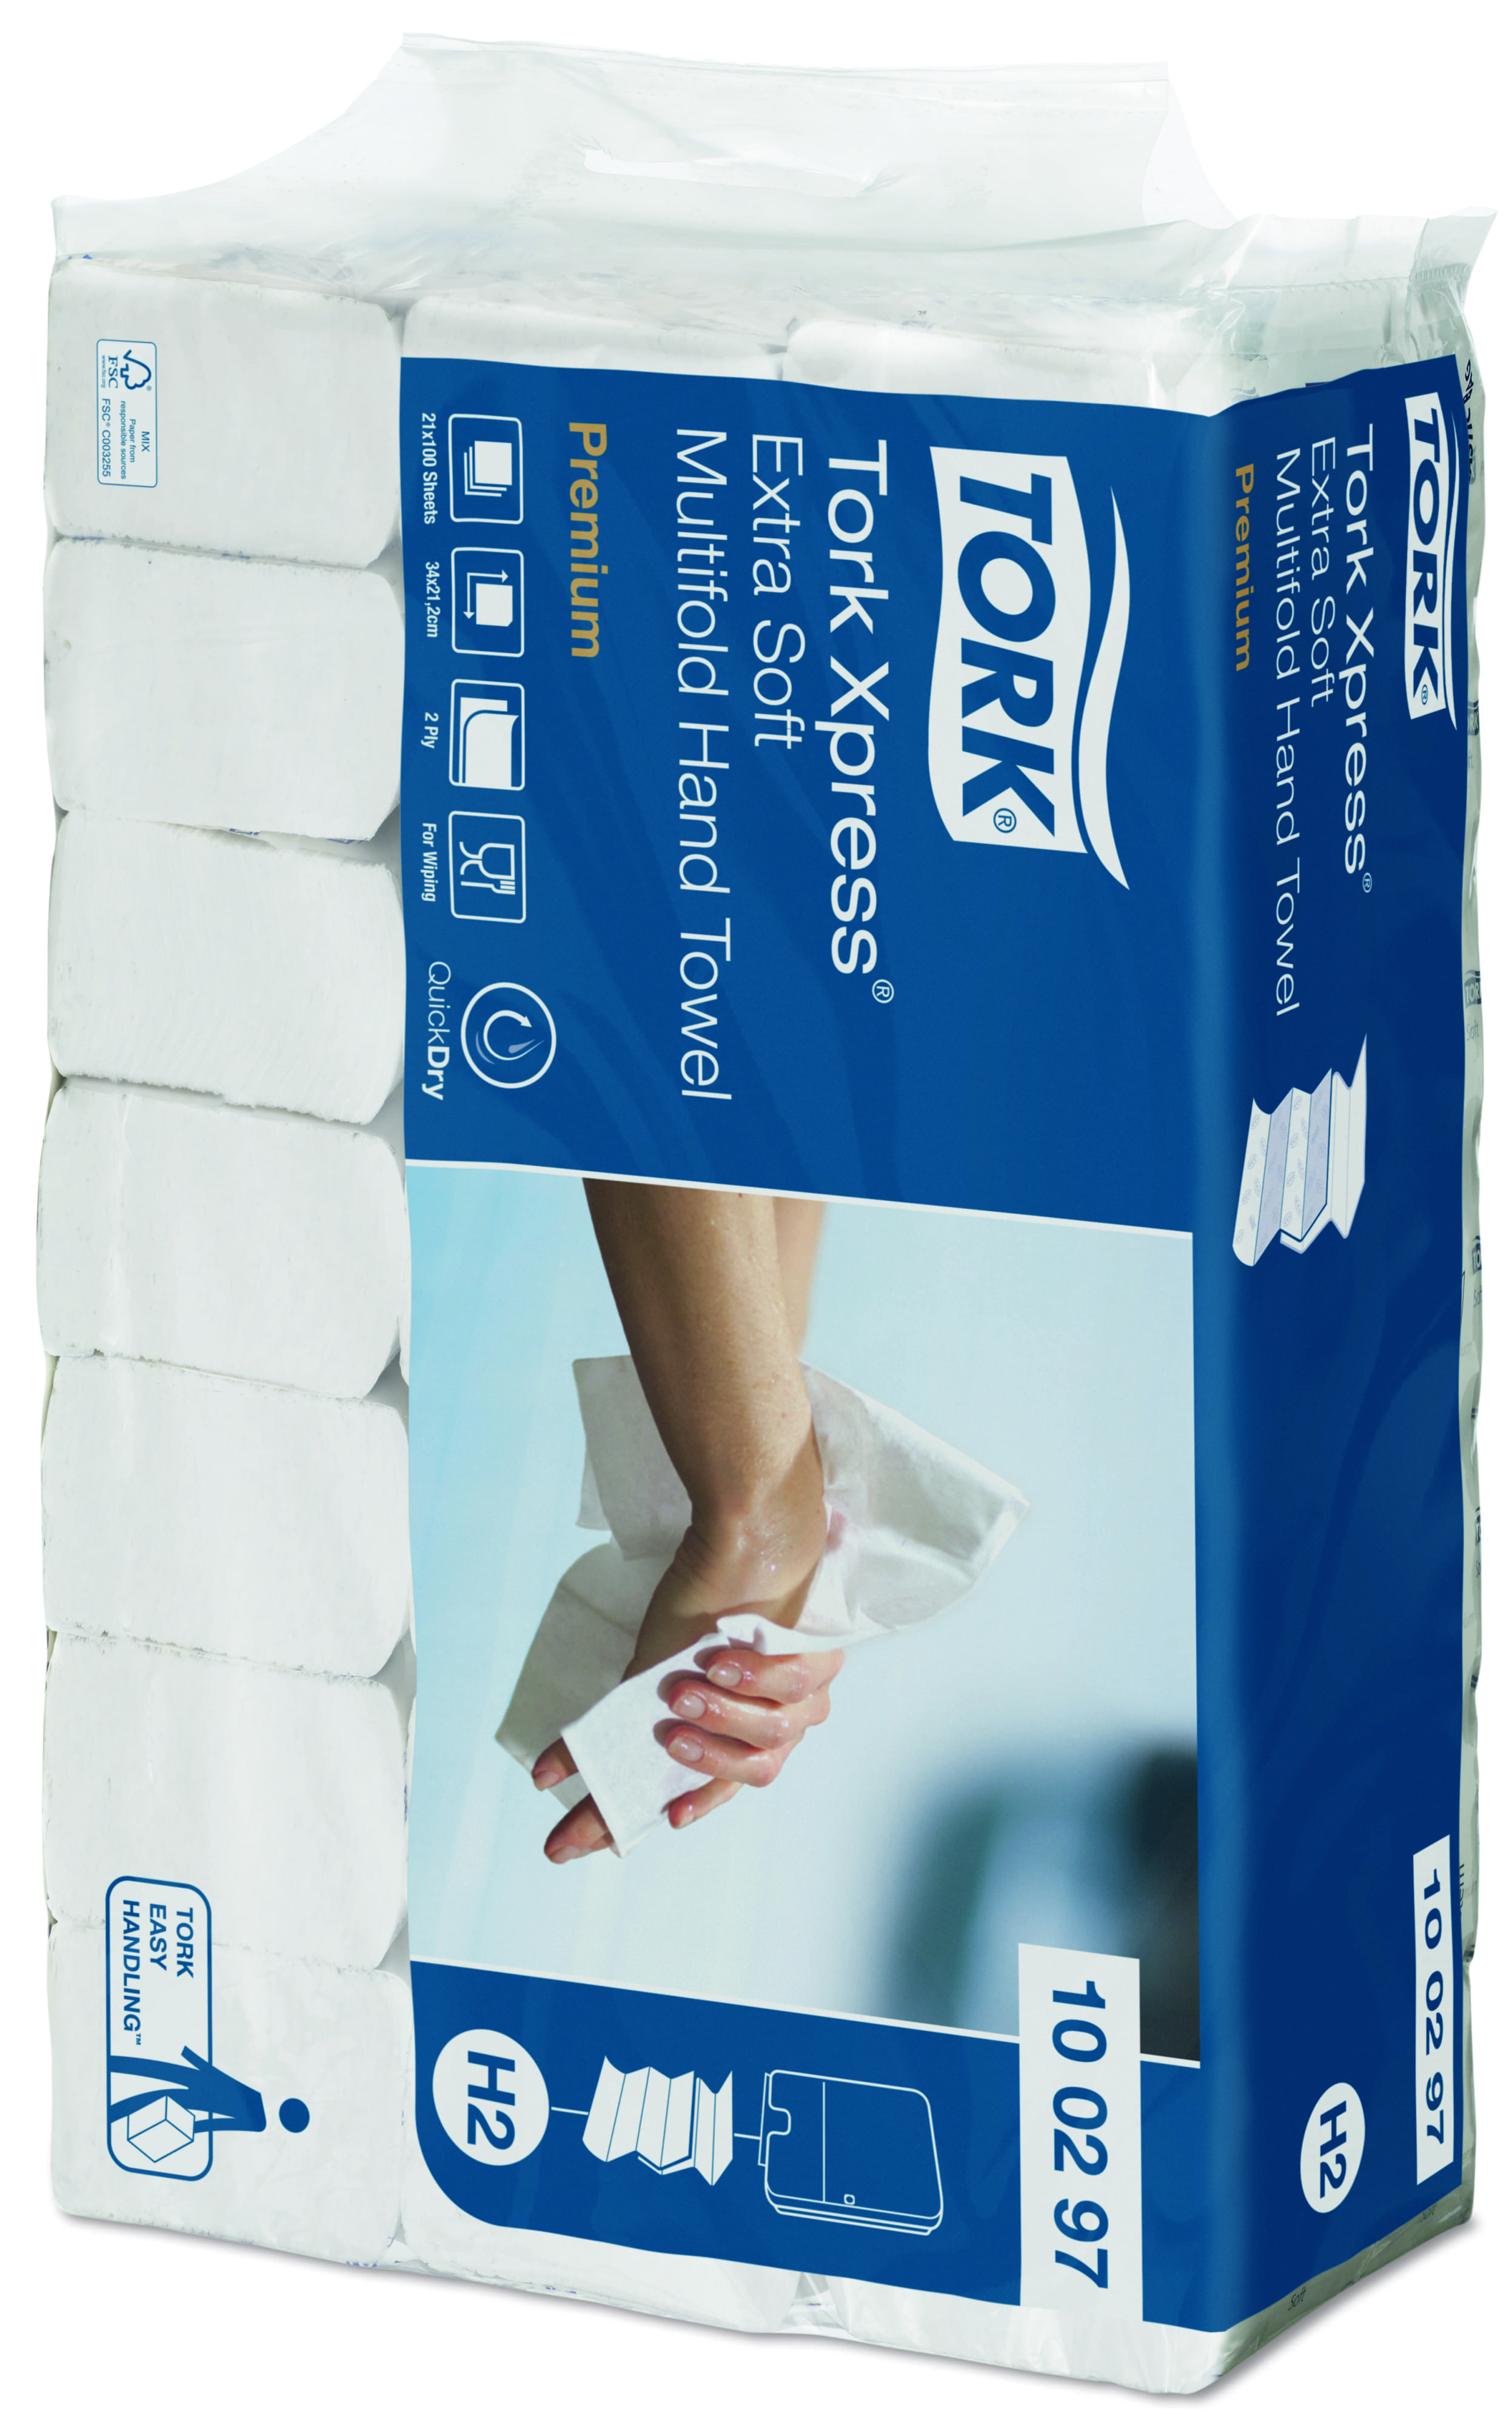 Купить полотенце сложение. 100288 Торк. Полотенца торк Premium. Бумажные полотенца Tork Xpress 100288 h2. Листовые бумажные полотенца Tork Xpress.